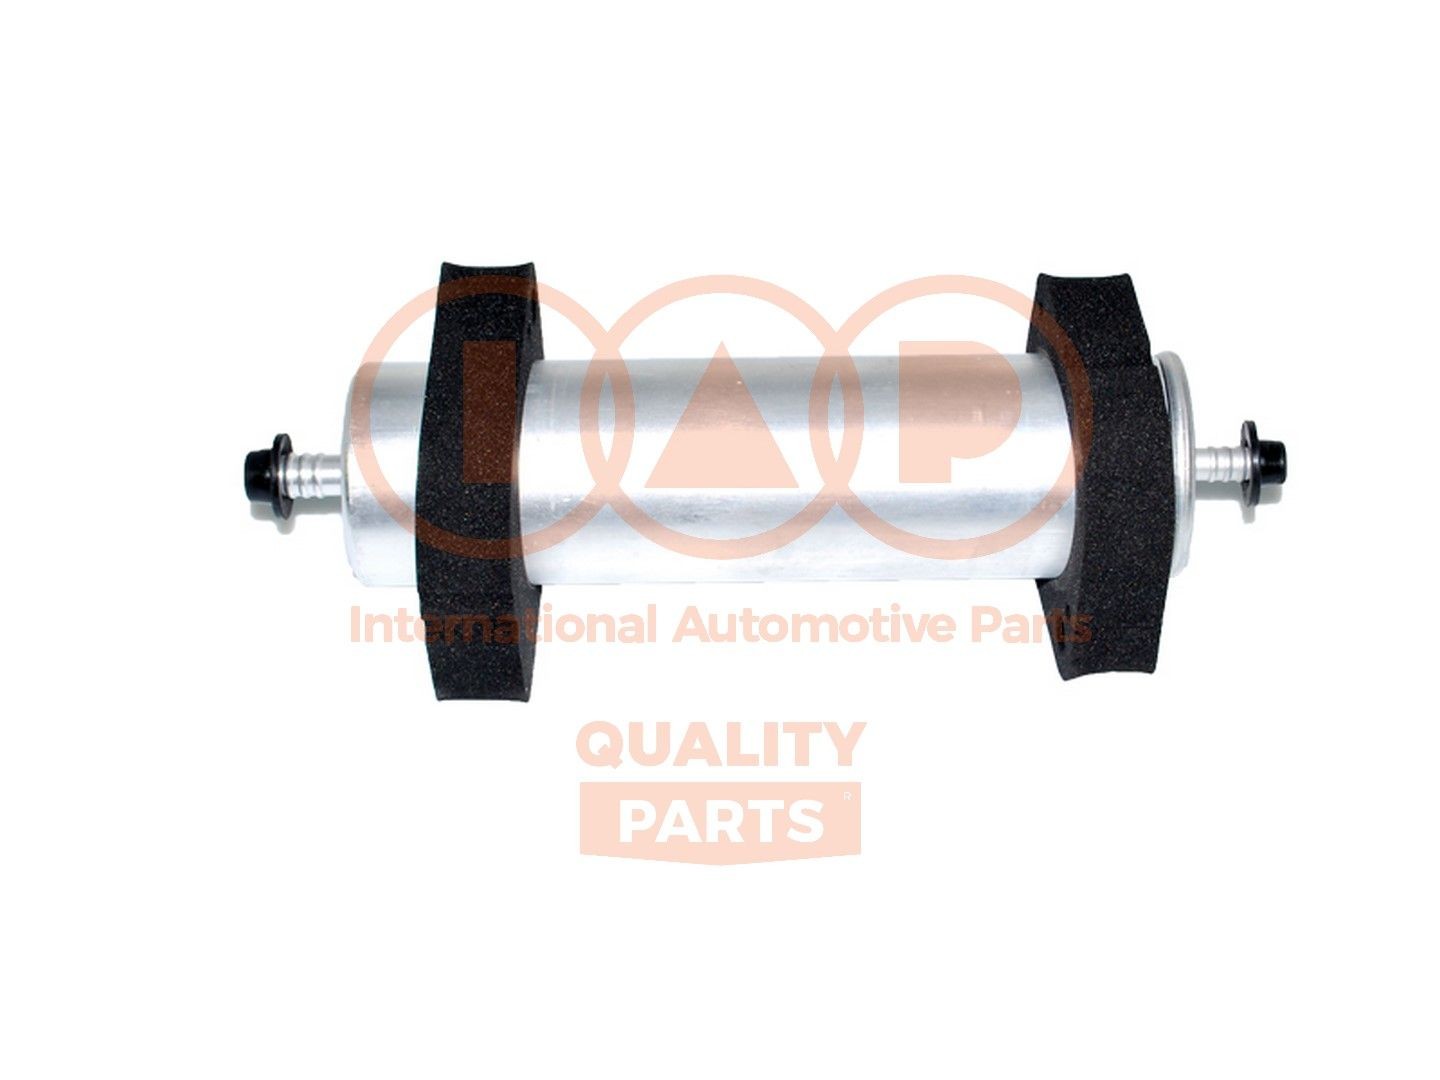 Original IAP QUALITY PARTS Fuel filter 122-50040 for AUDI TT